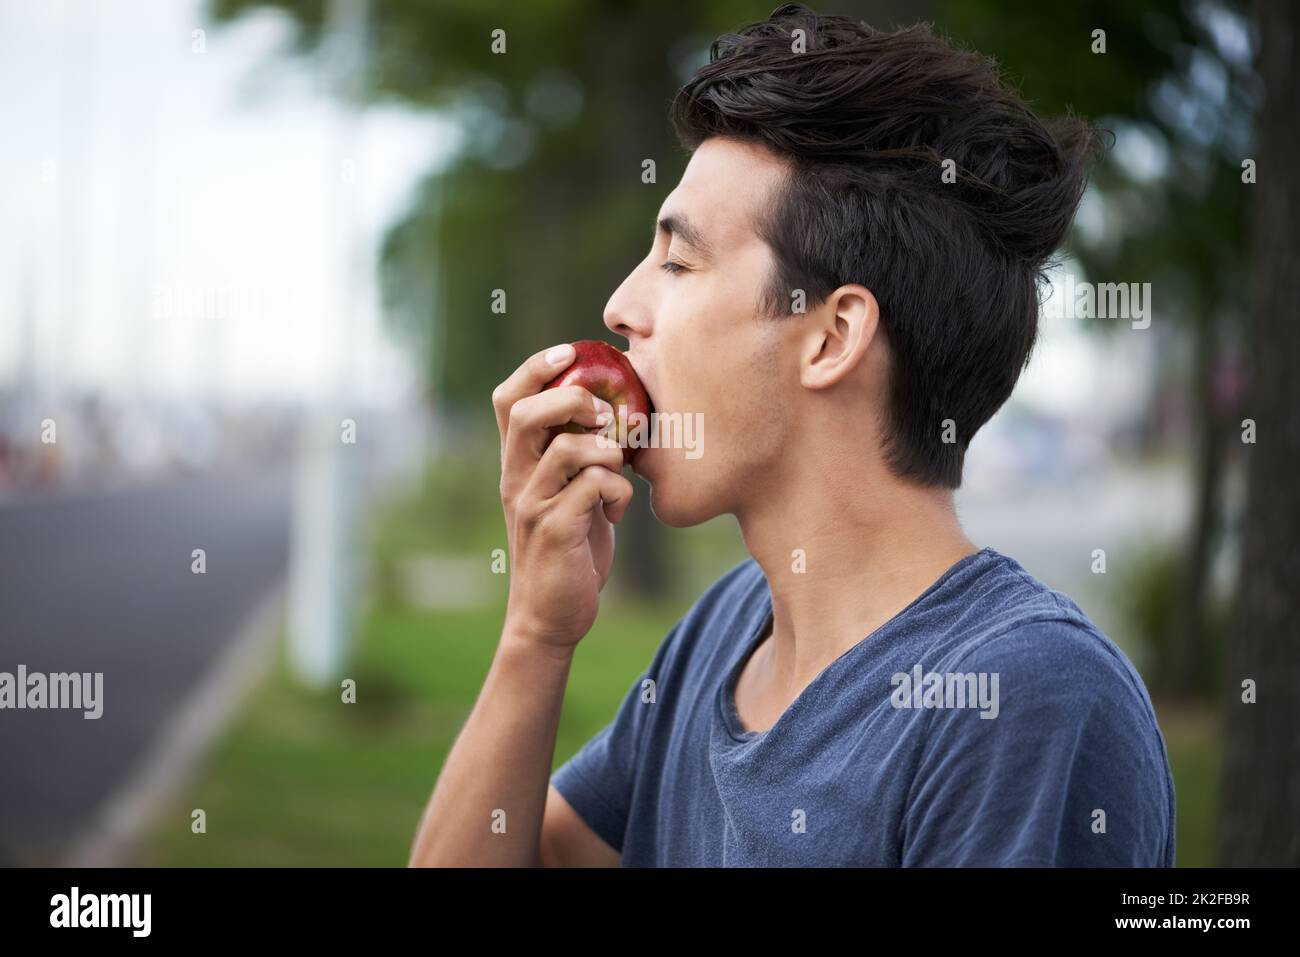 Einen Bissen nehmen. Ein junger Mann, der einen Apfel beißt, während er auf den Bus wartet. Stockfoto